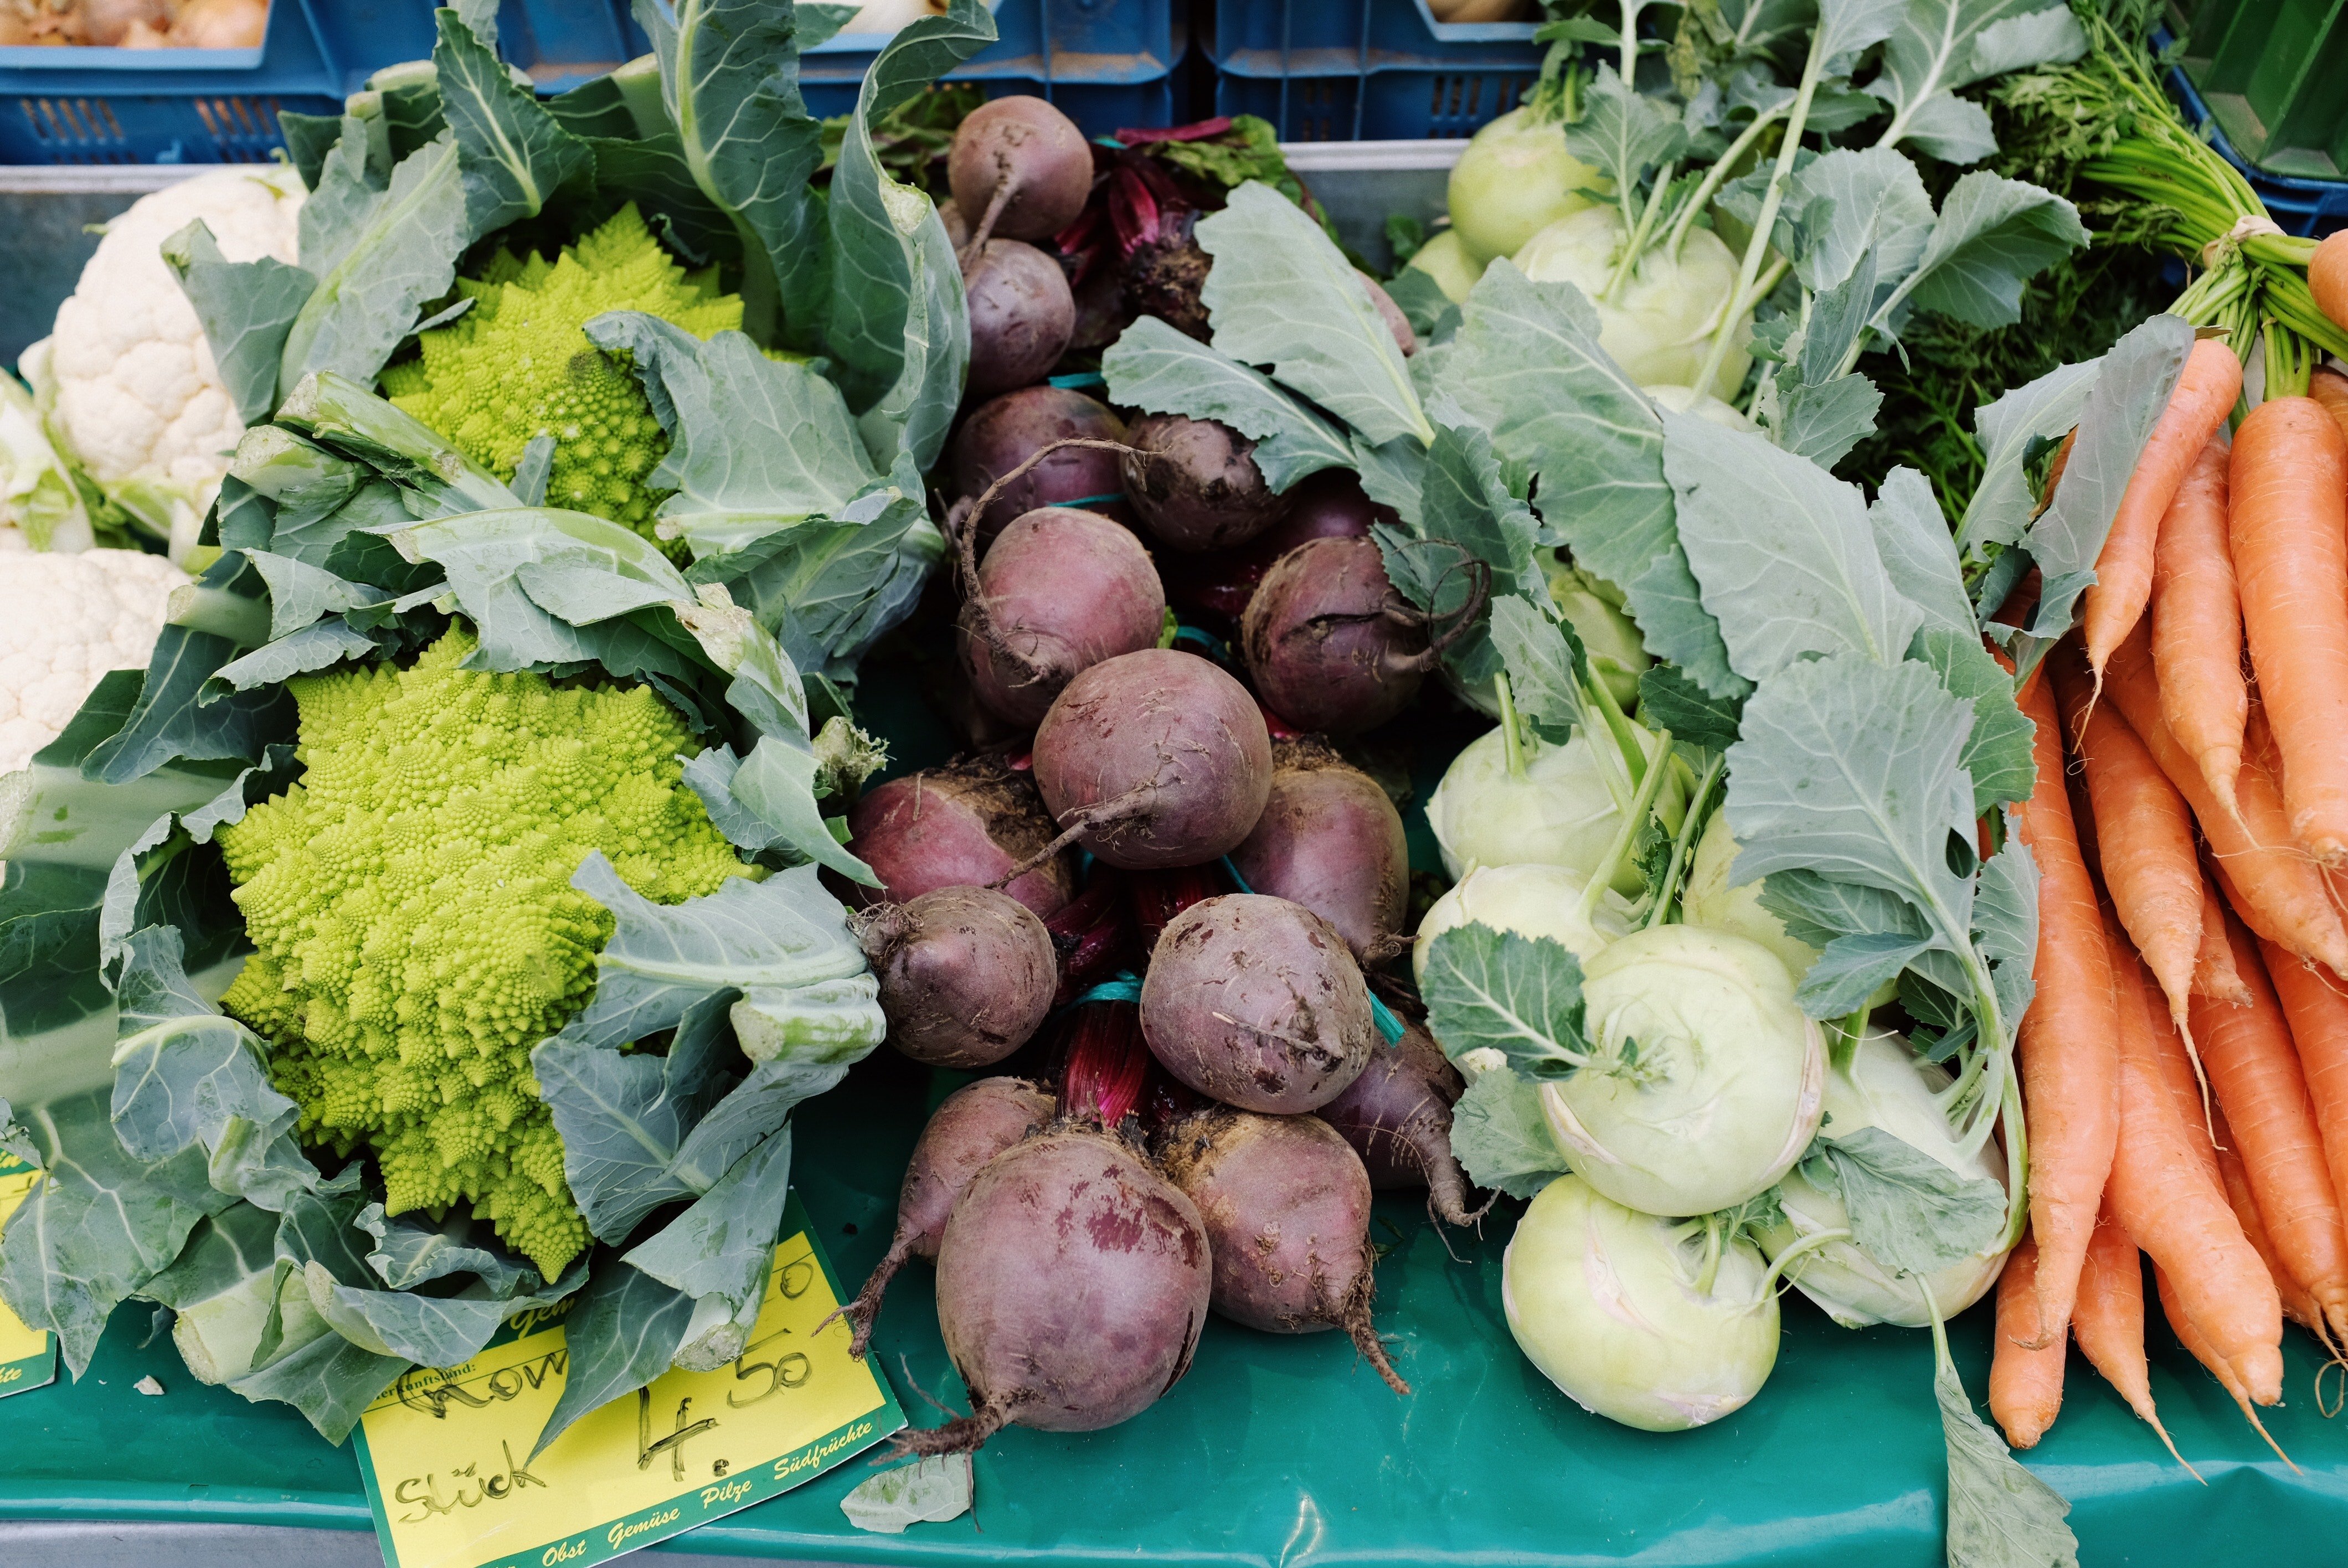 Herr Farrell kaufte immer das gleiche Gemüse im Laden. | Quelle: Pexels